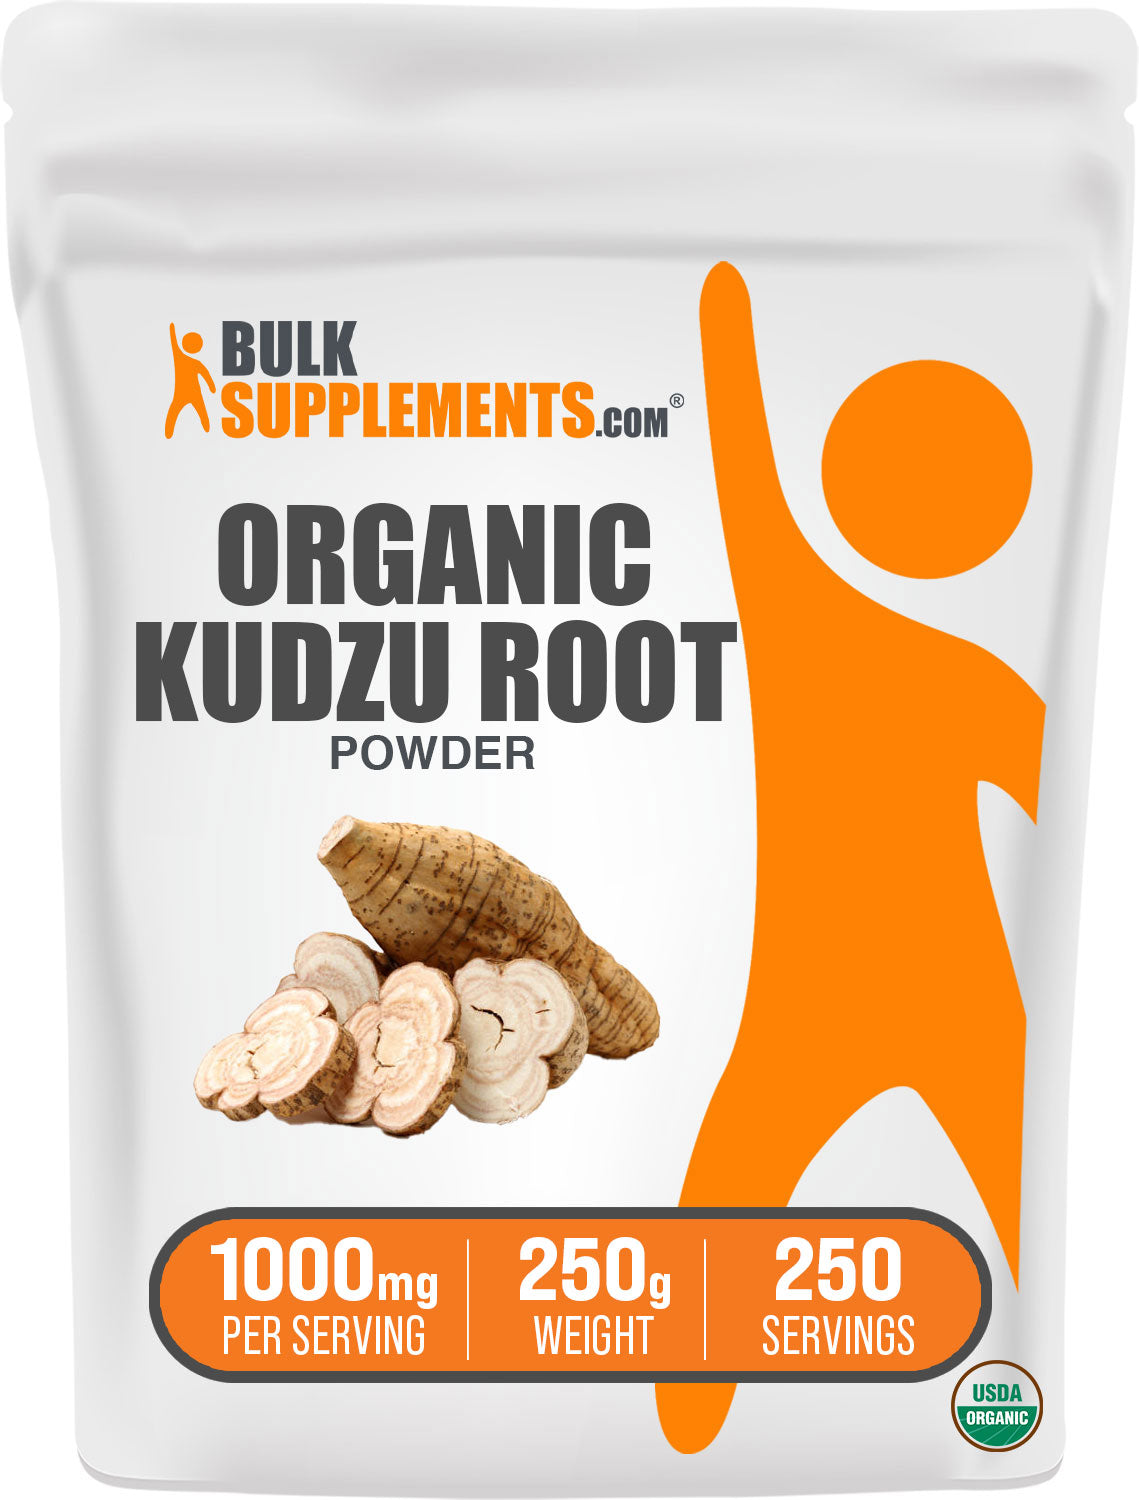 Organic Kudzu Root Powder 250g Bag